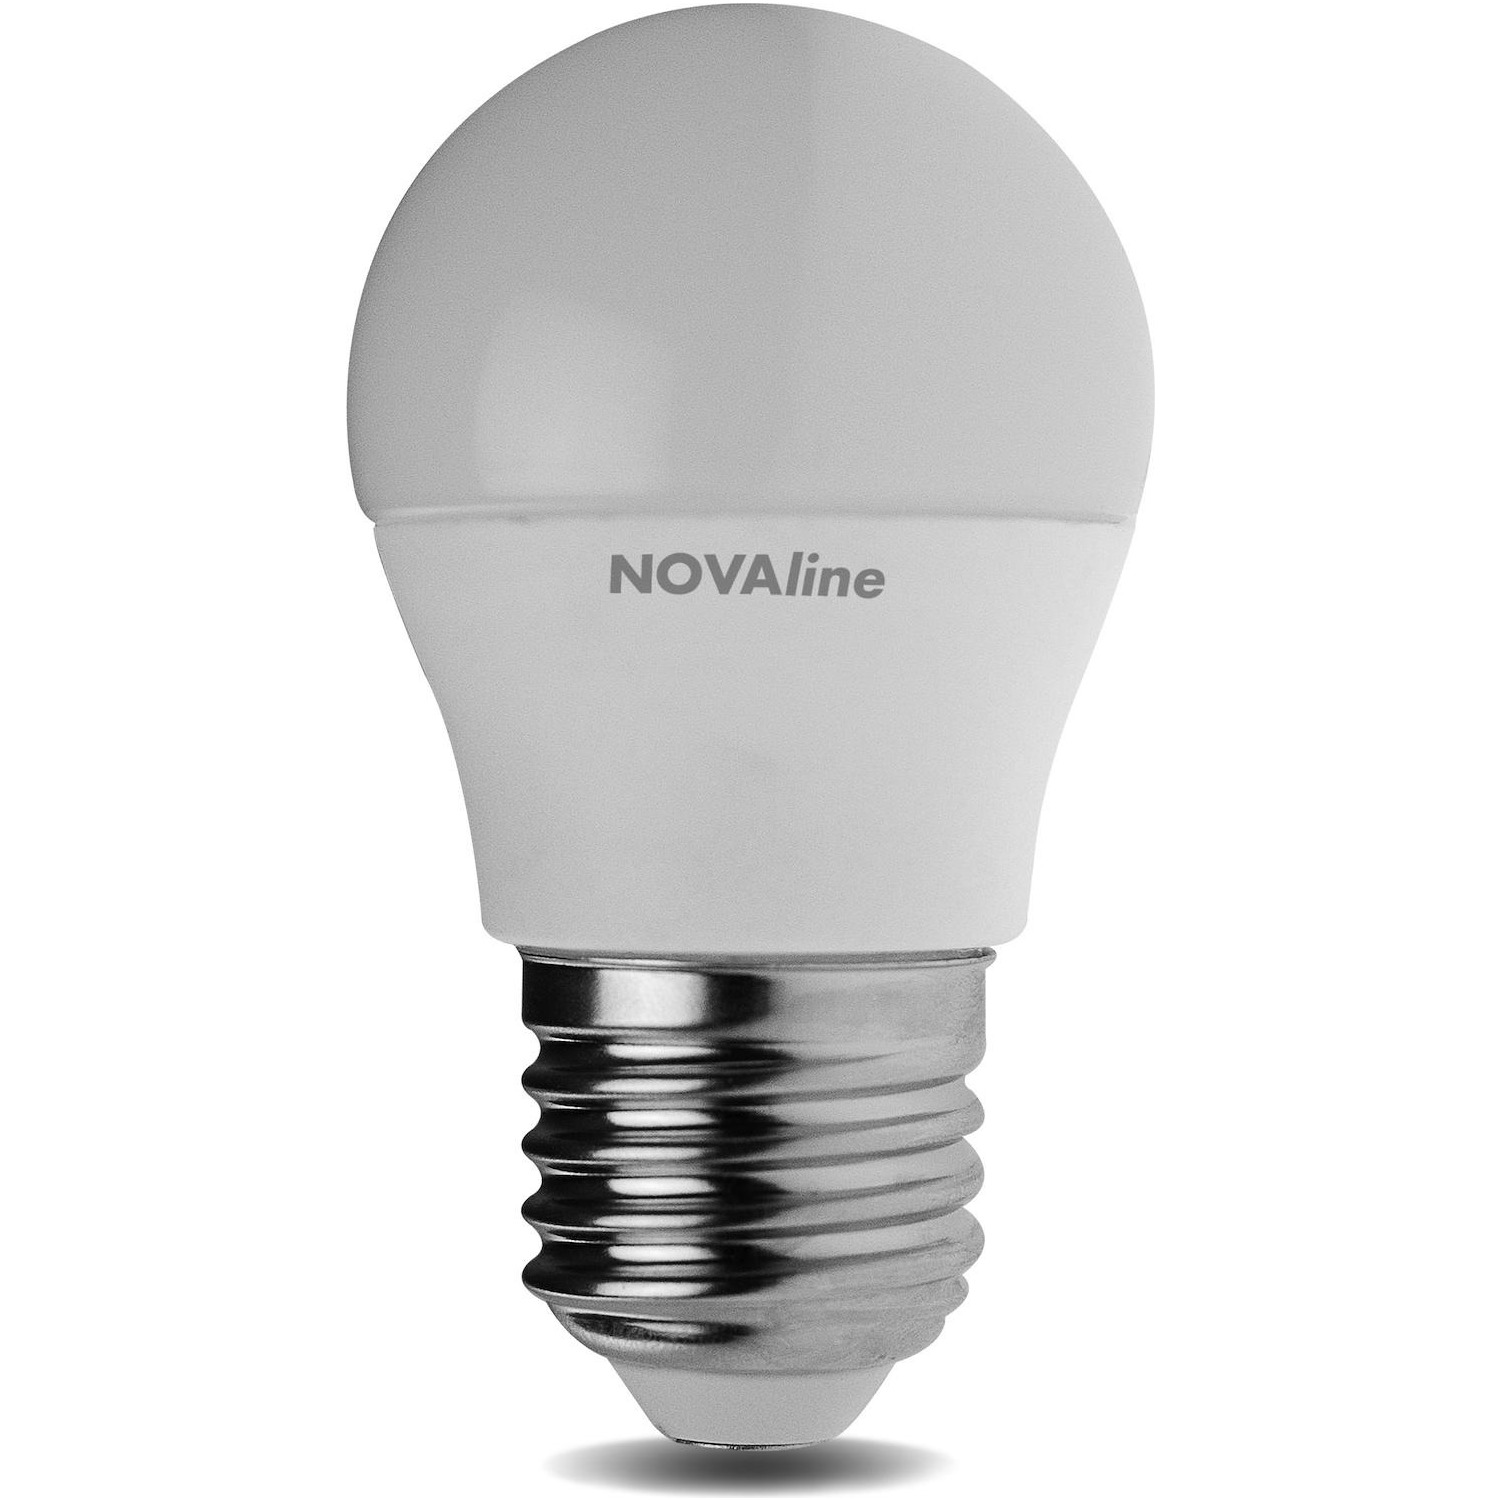 Immagine per Lampadina Sfera Novaline Classic E27 3W LC LED da DIMOStore